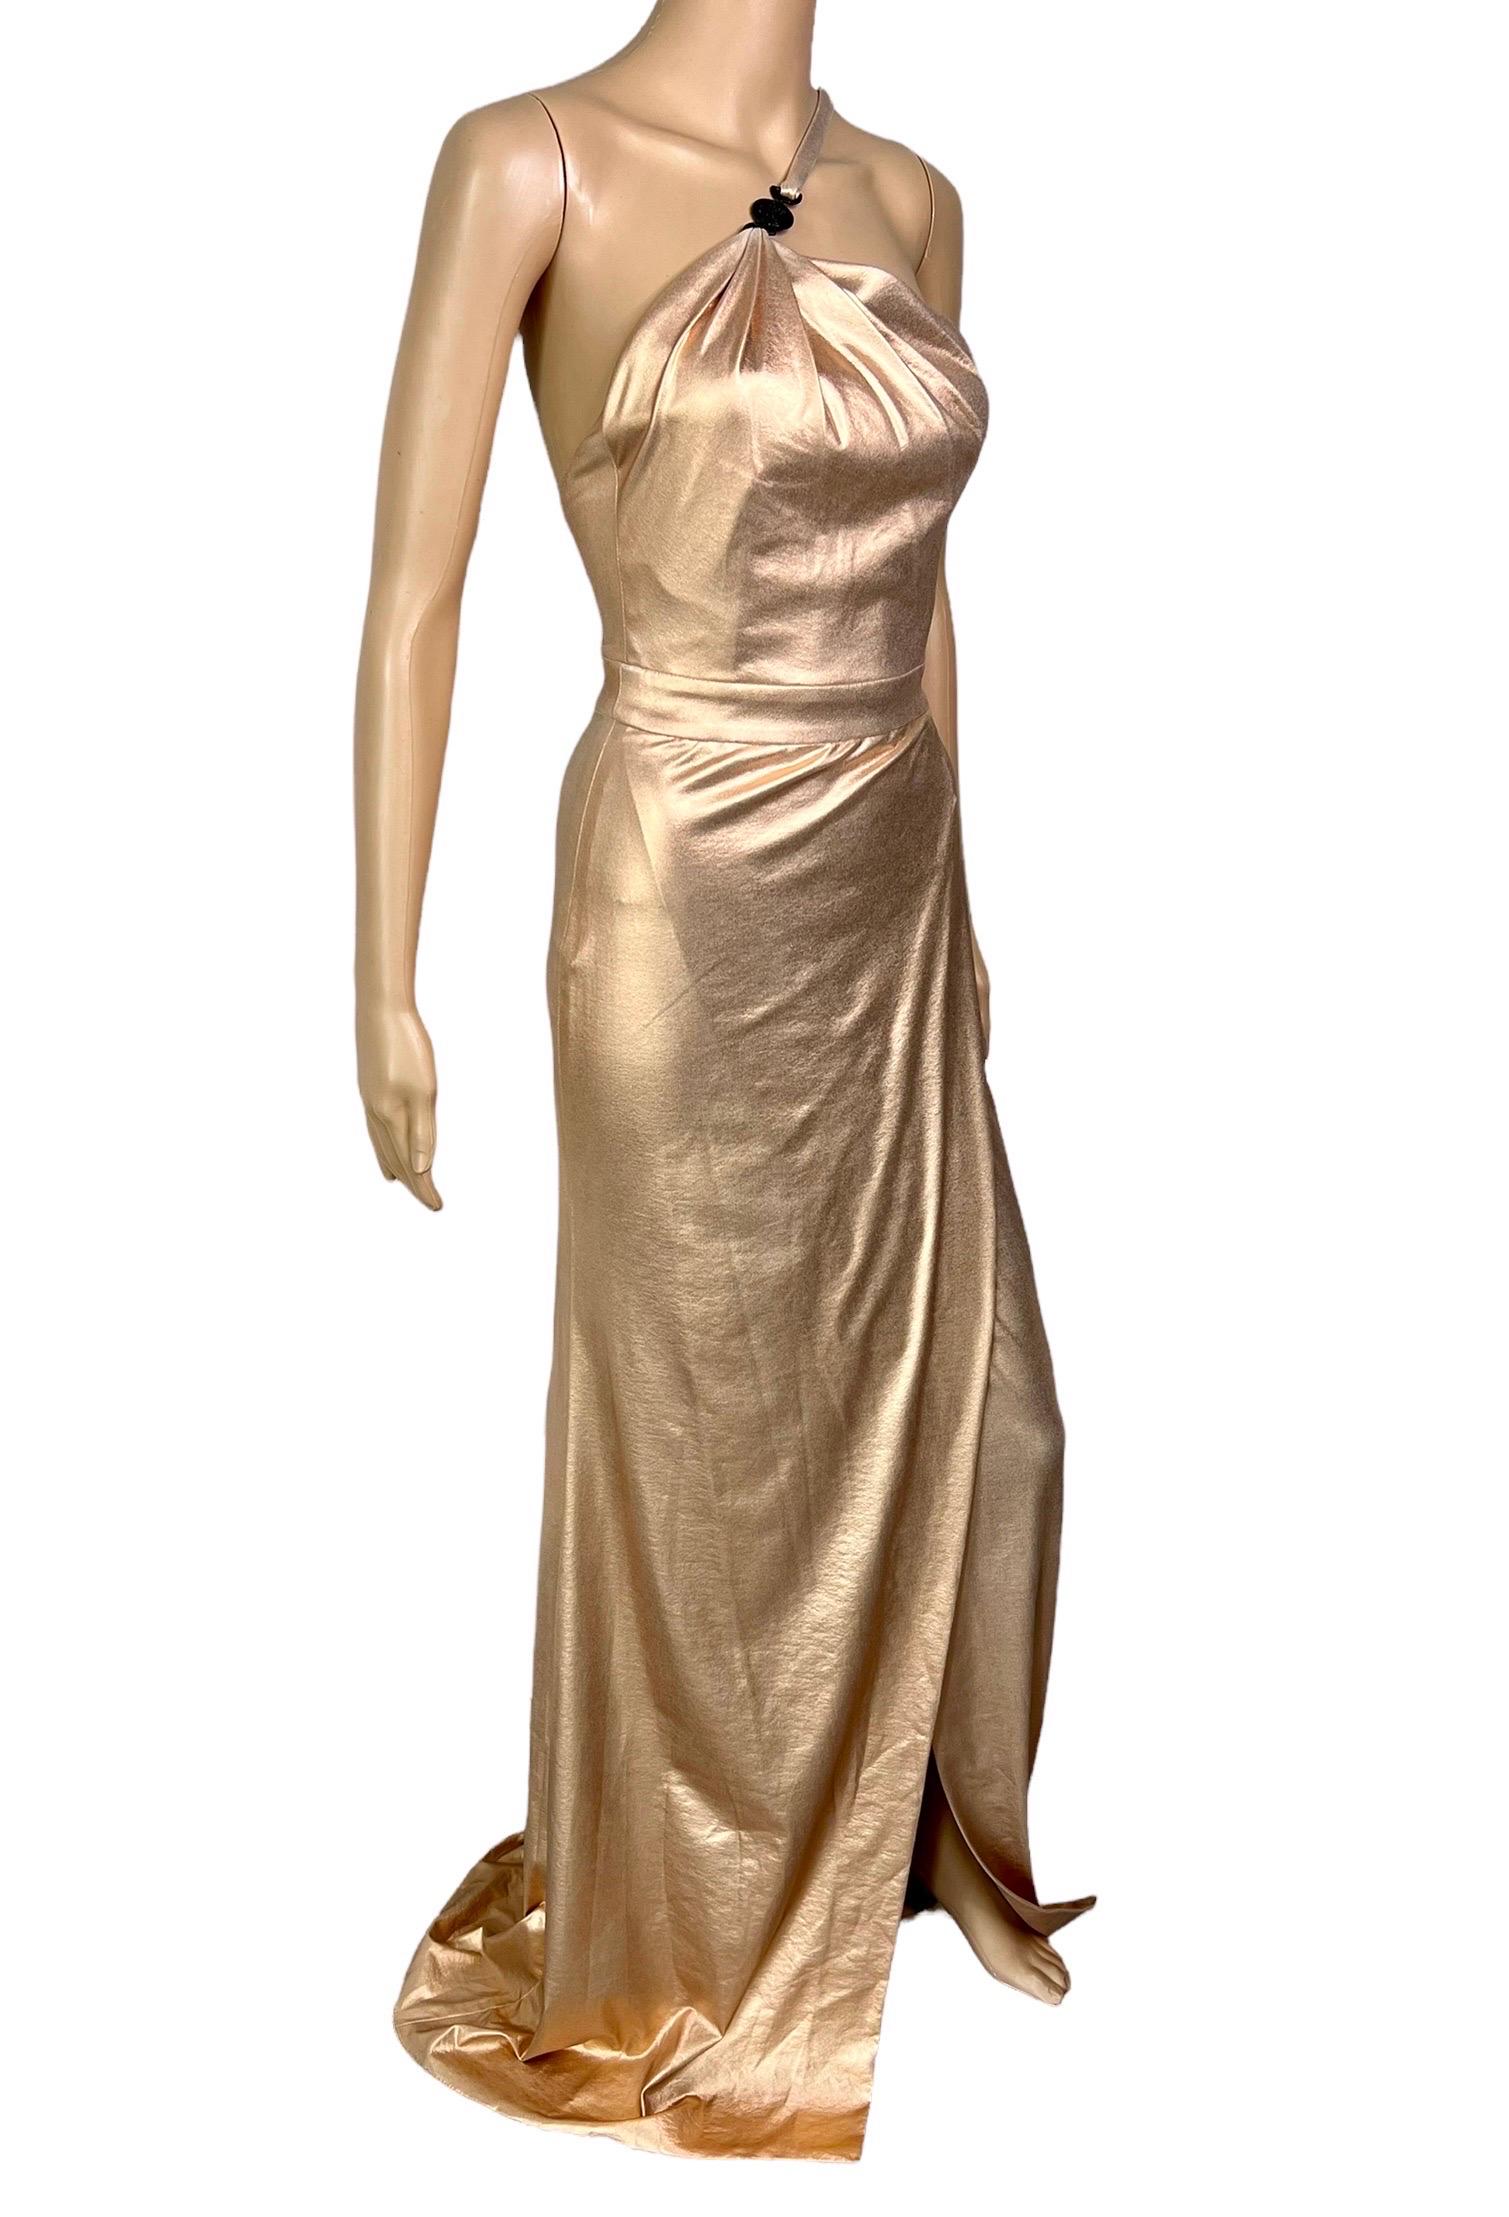 Versace c.2013 Wet Liquid Look Bodycon Metallic Rose Gold Evening Dress Gown 2